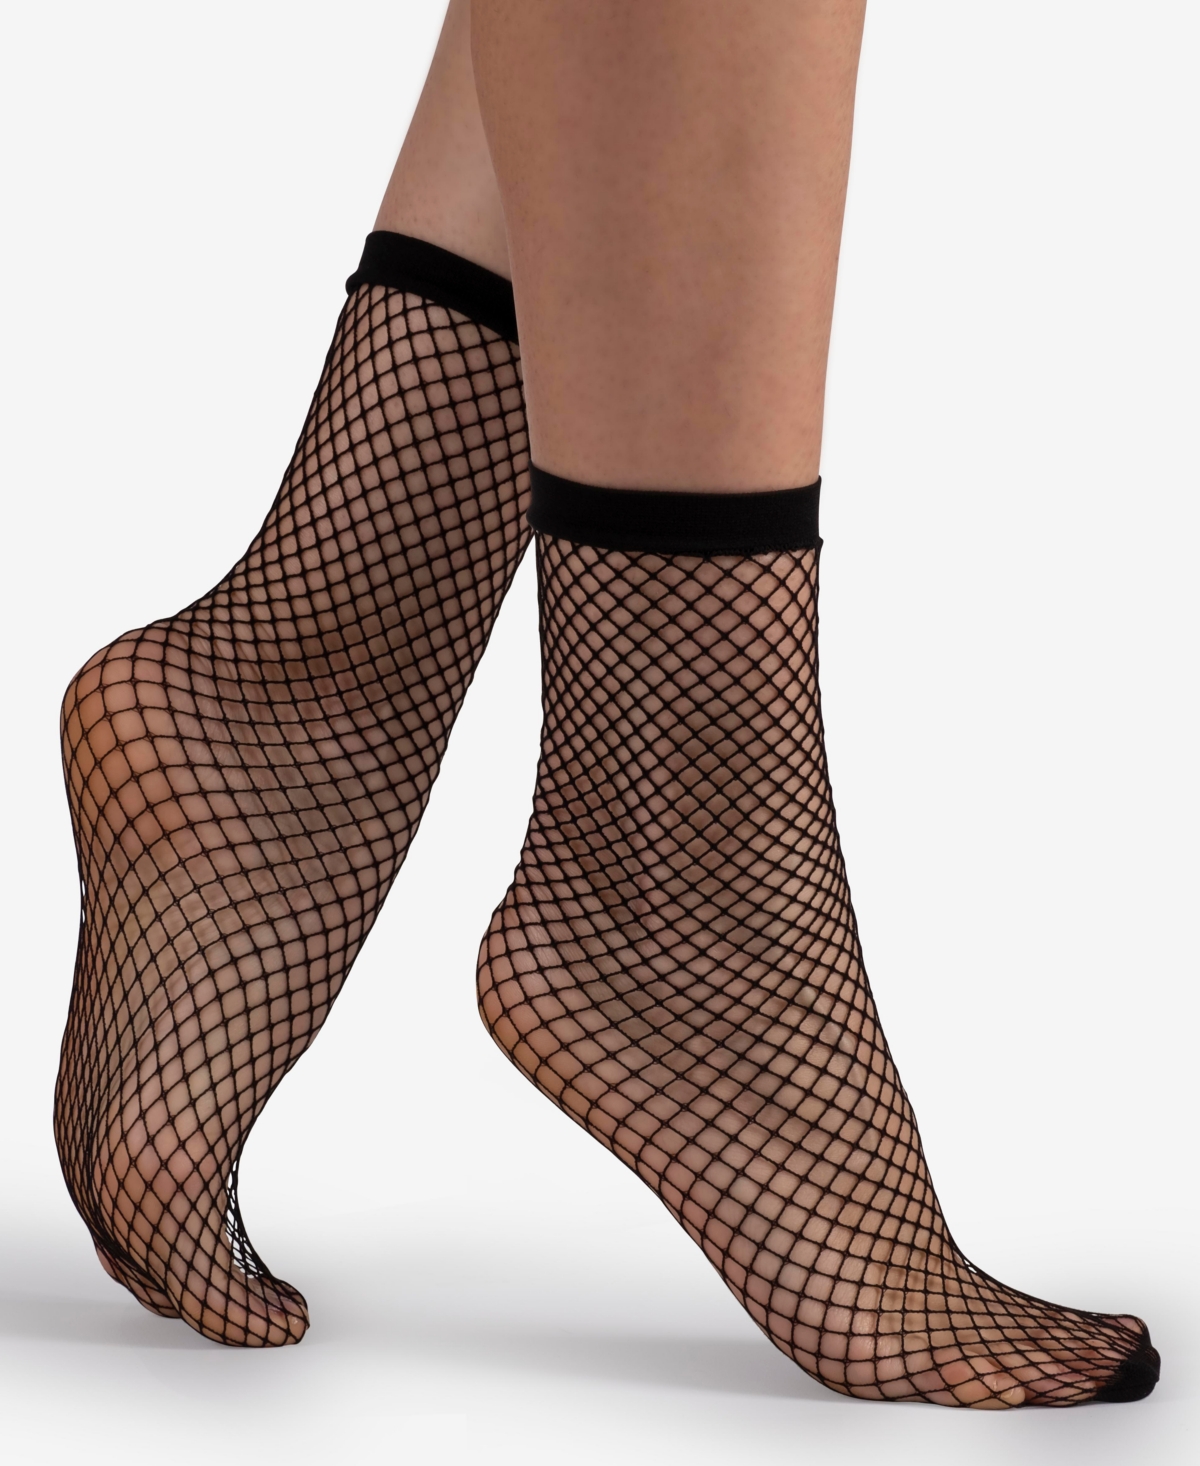 Women's European Made Fishnet 2 Pairs of Socks - Black